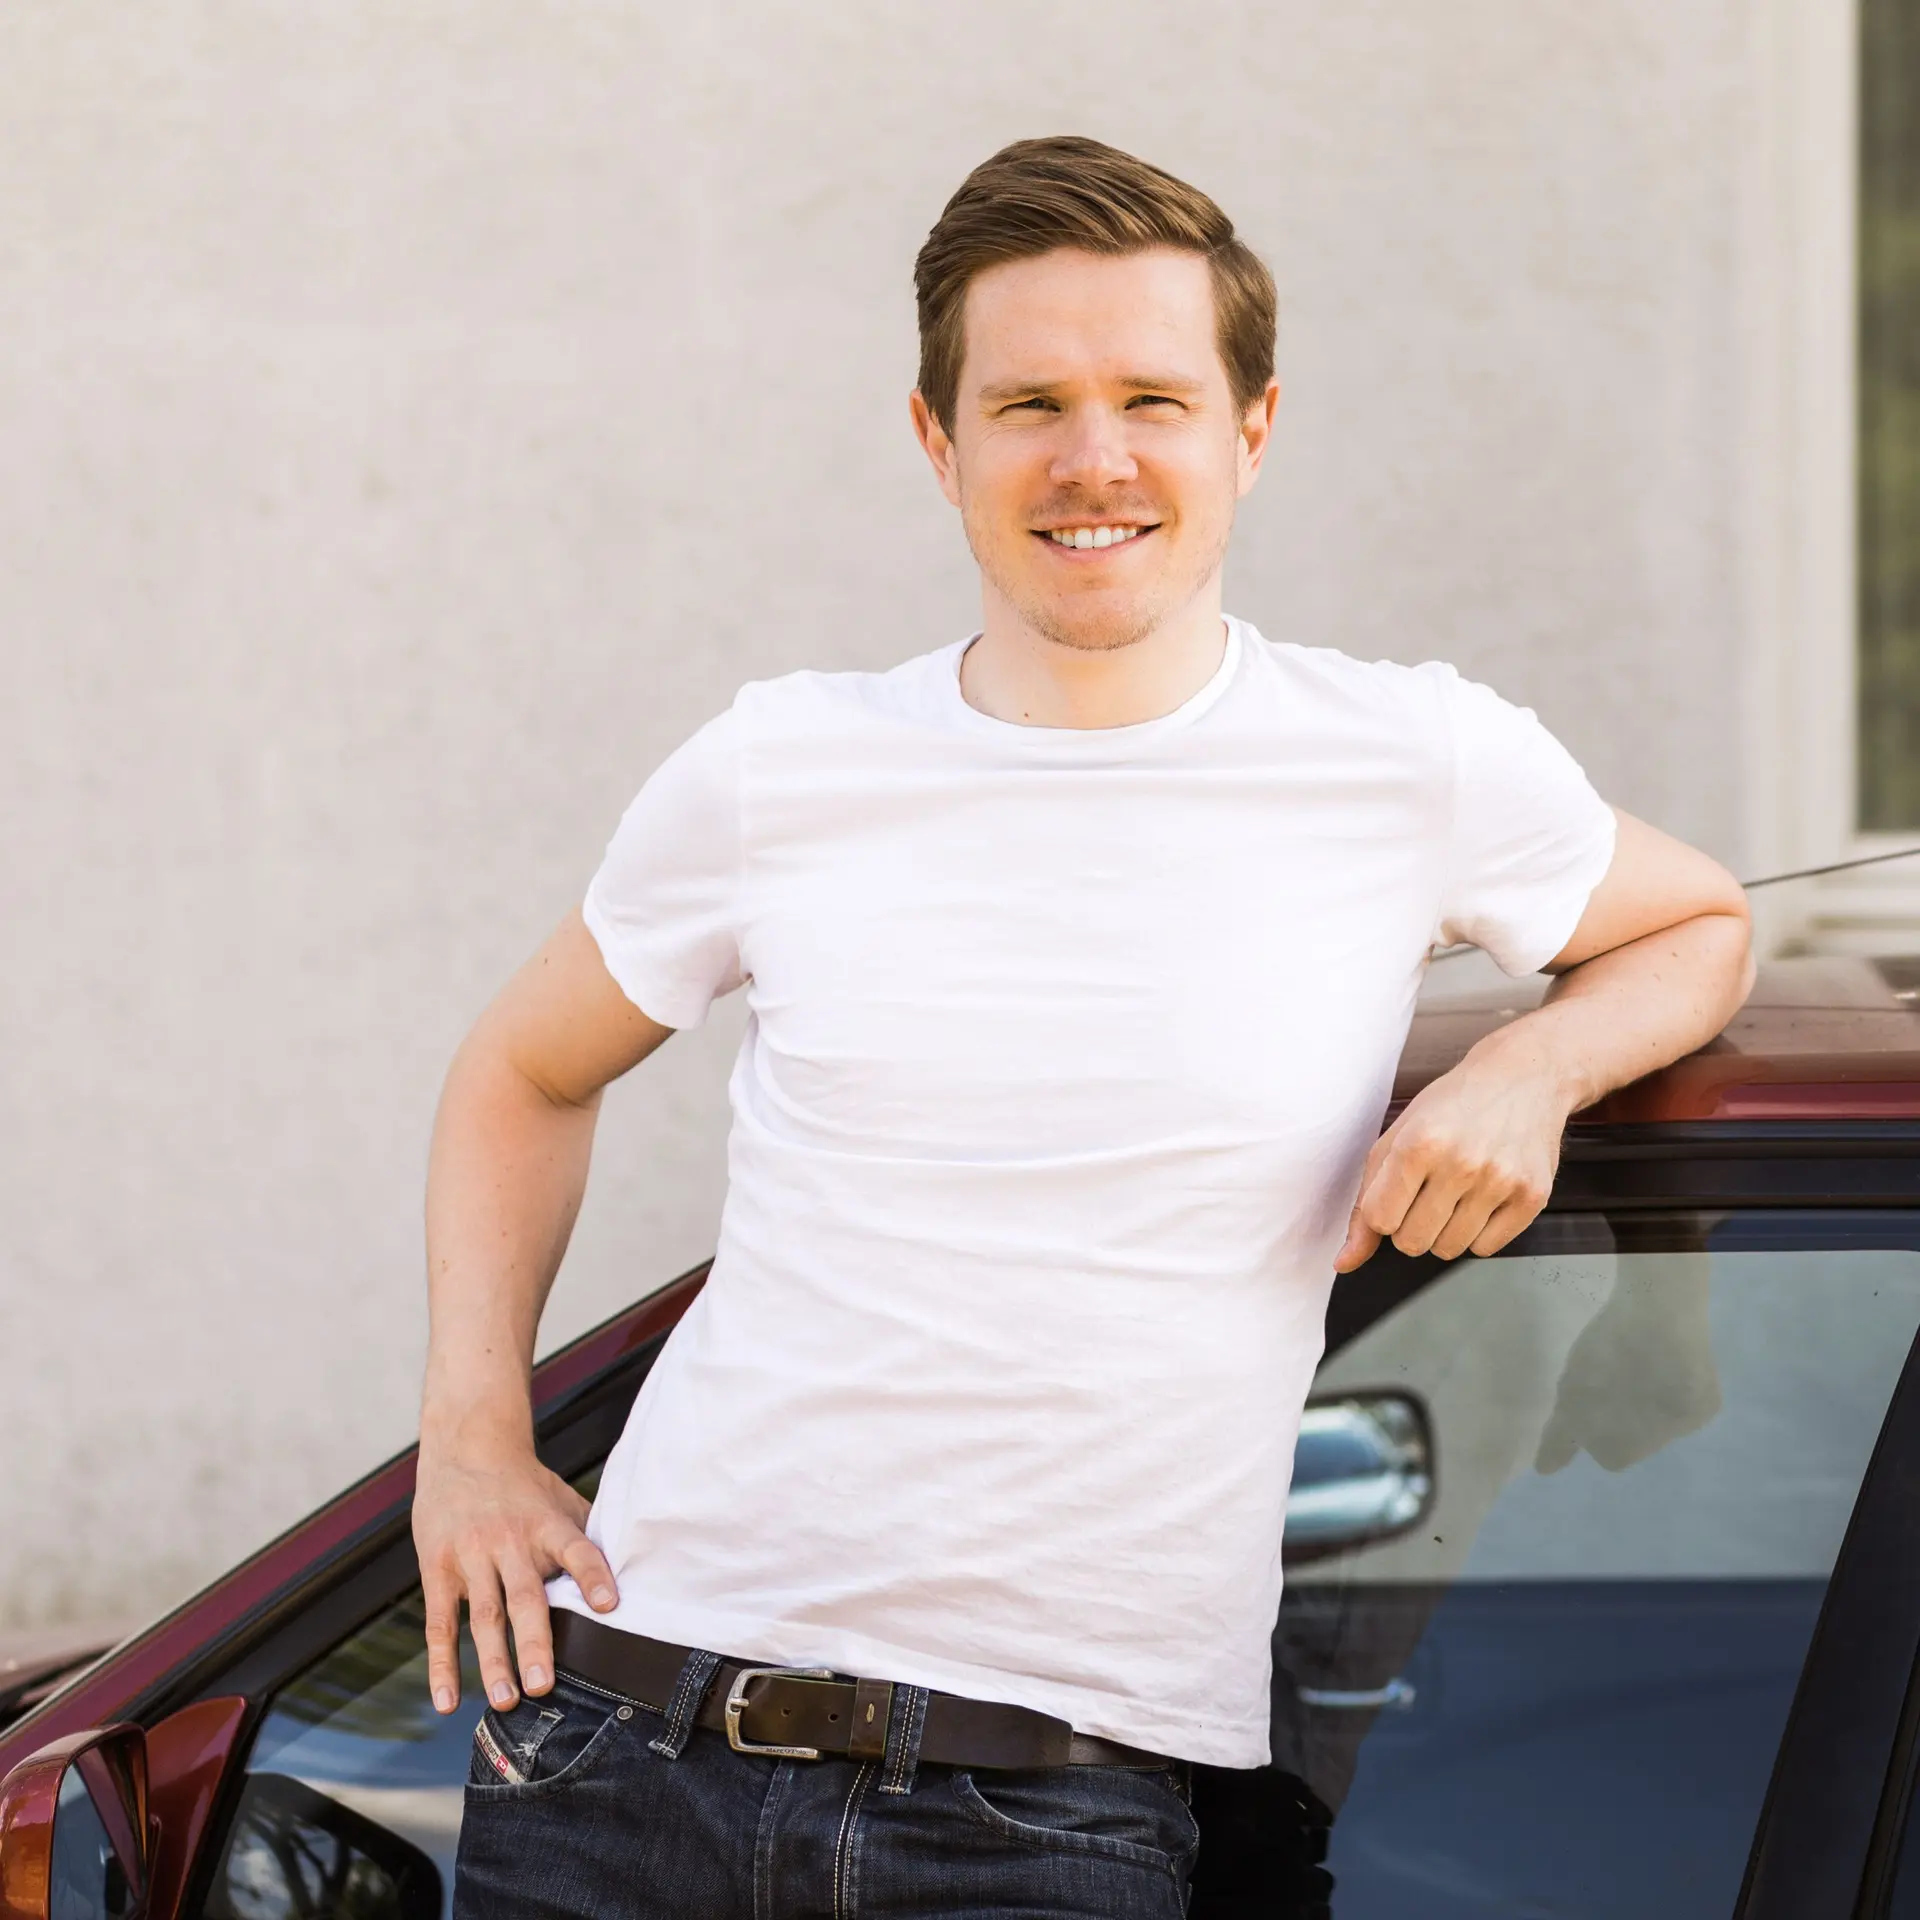 Ein junger Mann steht angelehnt an einem Auto und lächelt.